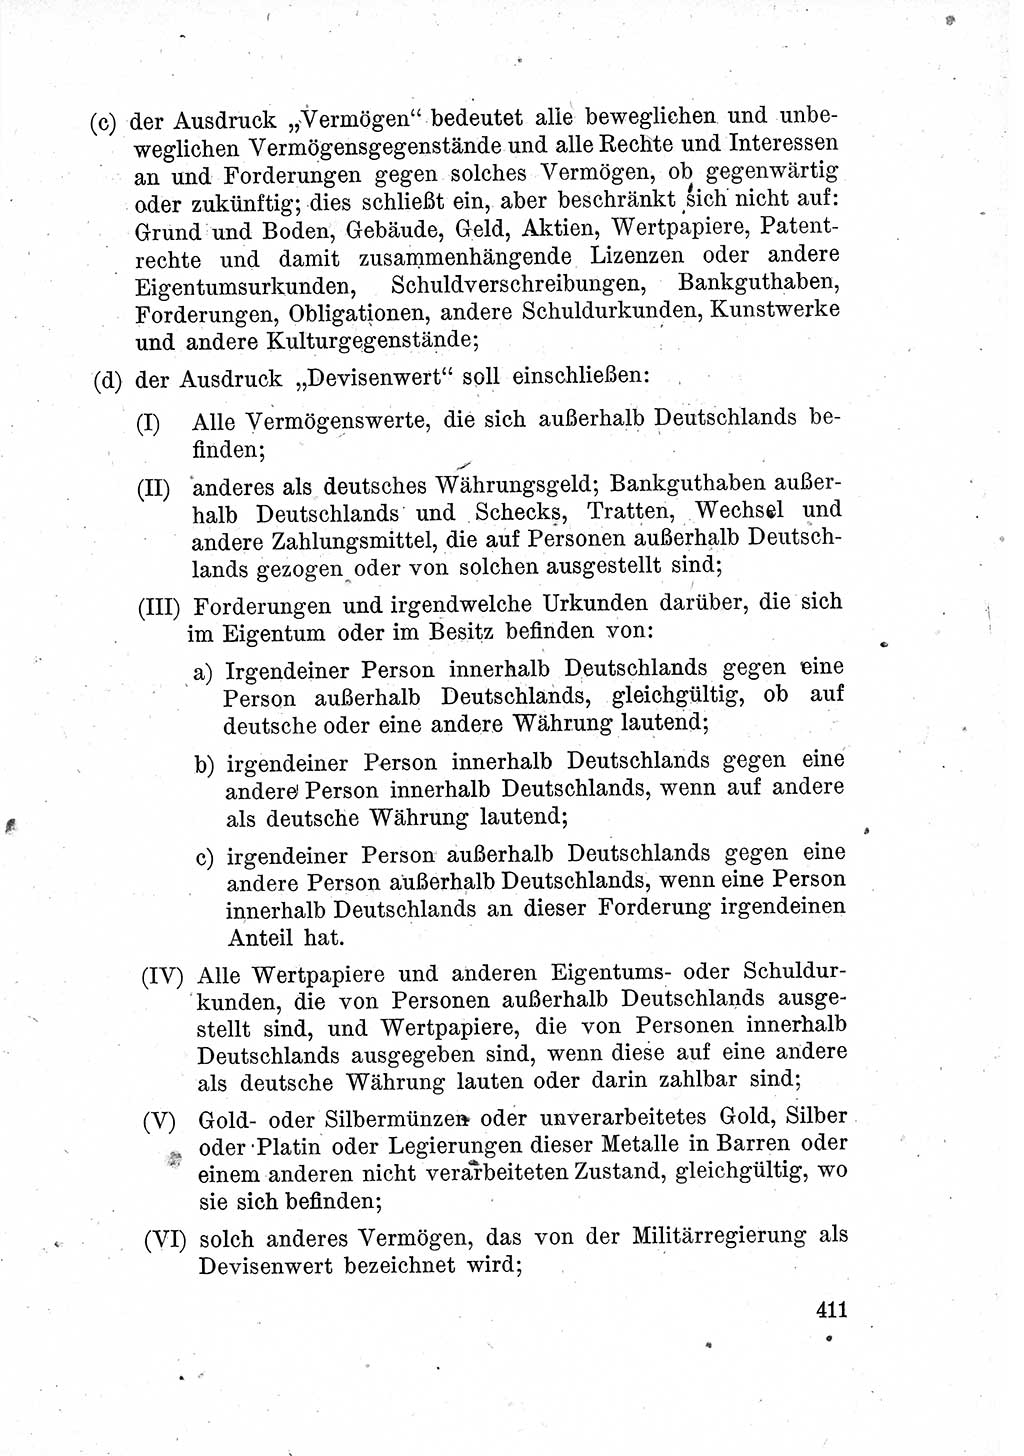 Das Recht der Besatzungsmacht (Deutschland), Proklamationen, Deklerationen, Verordnungen, Gesetze und Bekanntmachungen 1947, Seite 411 (R. Bes. Dtl. 1947, S. 411)